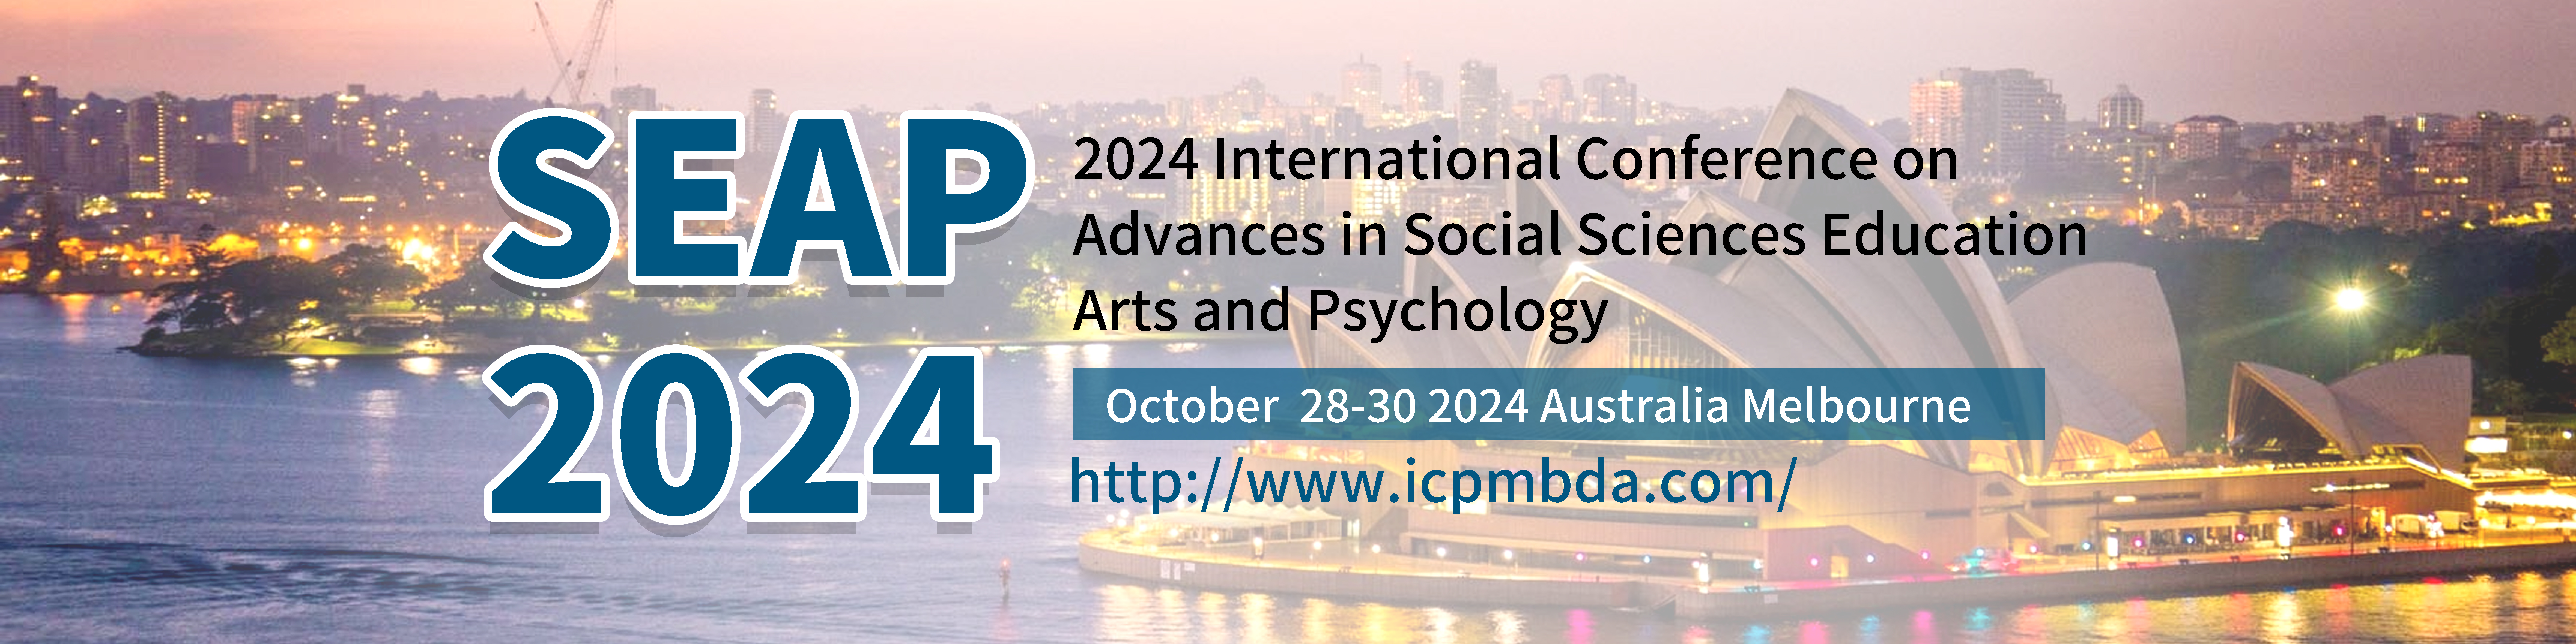 2024社会科学、教育、艺术与心理学进展国际会议(SEAP 2024)拷贝.jpg